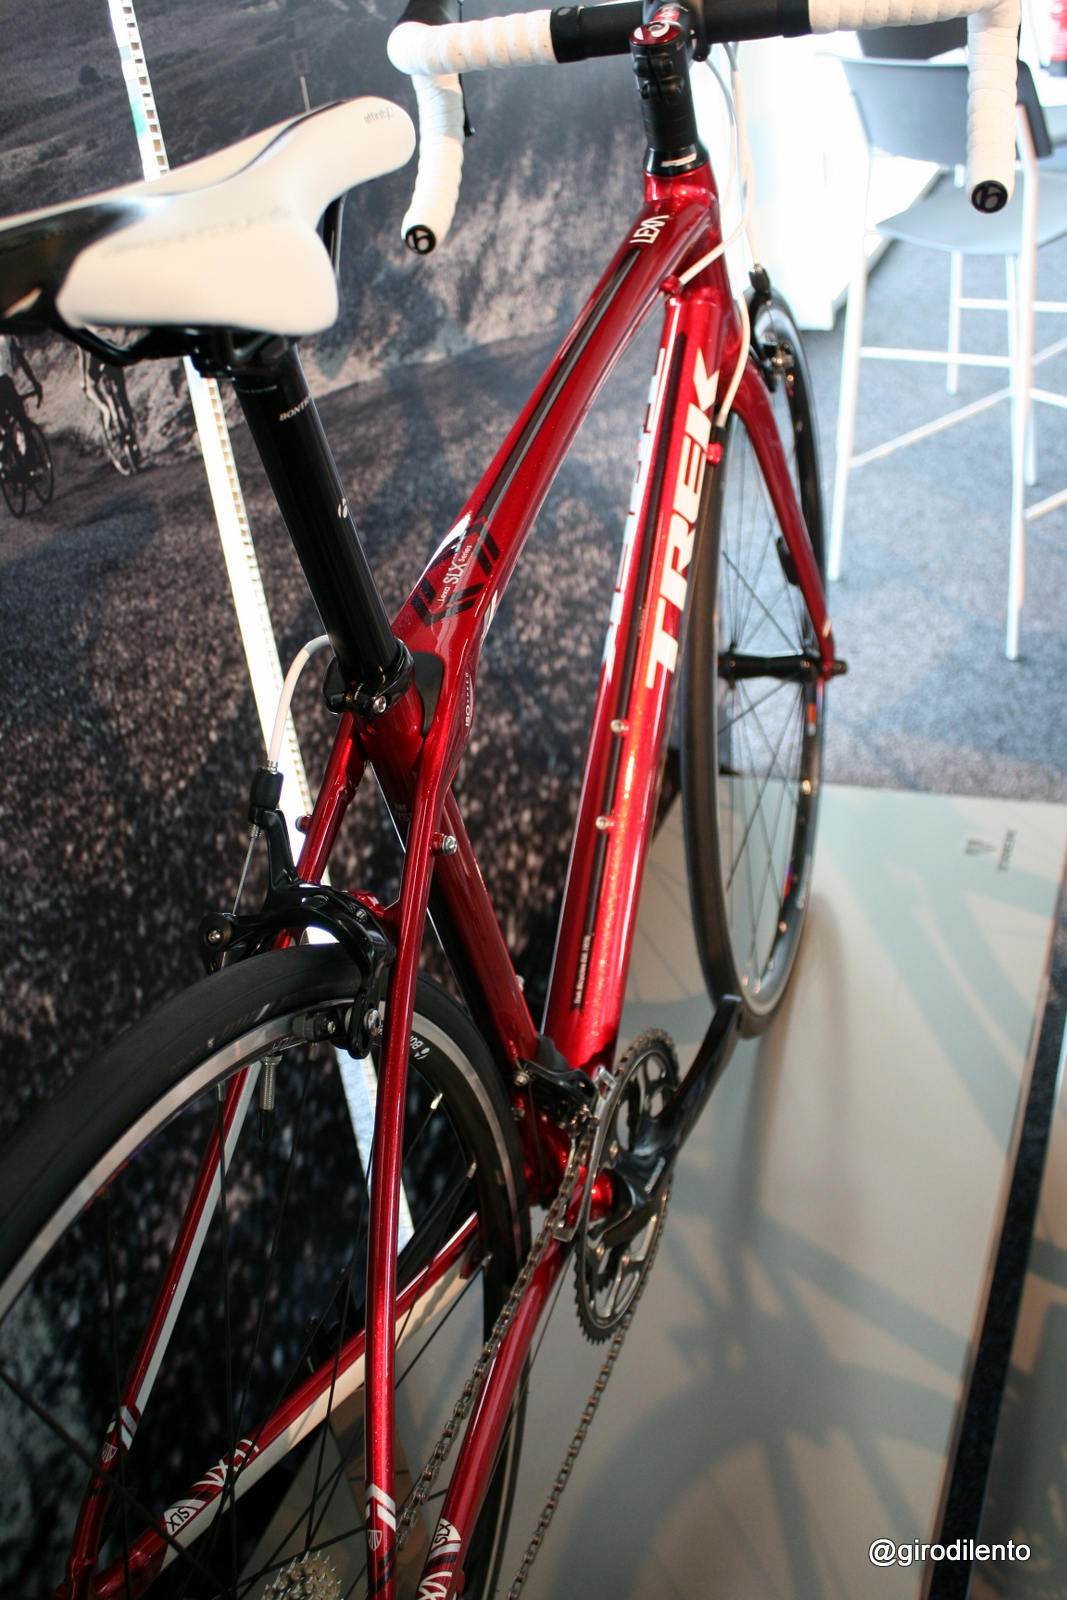 Trek Lexa SLX - stunning colour and great bike for the money